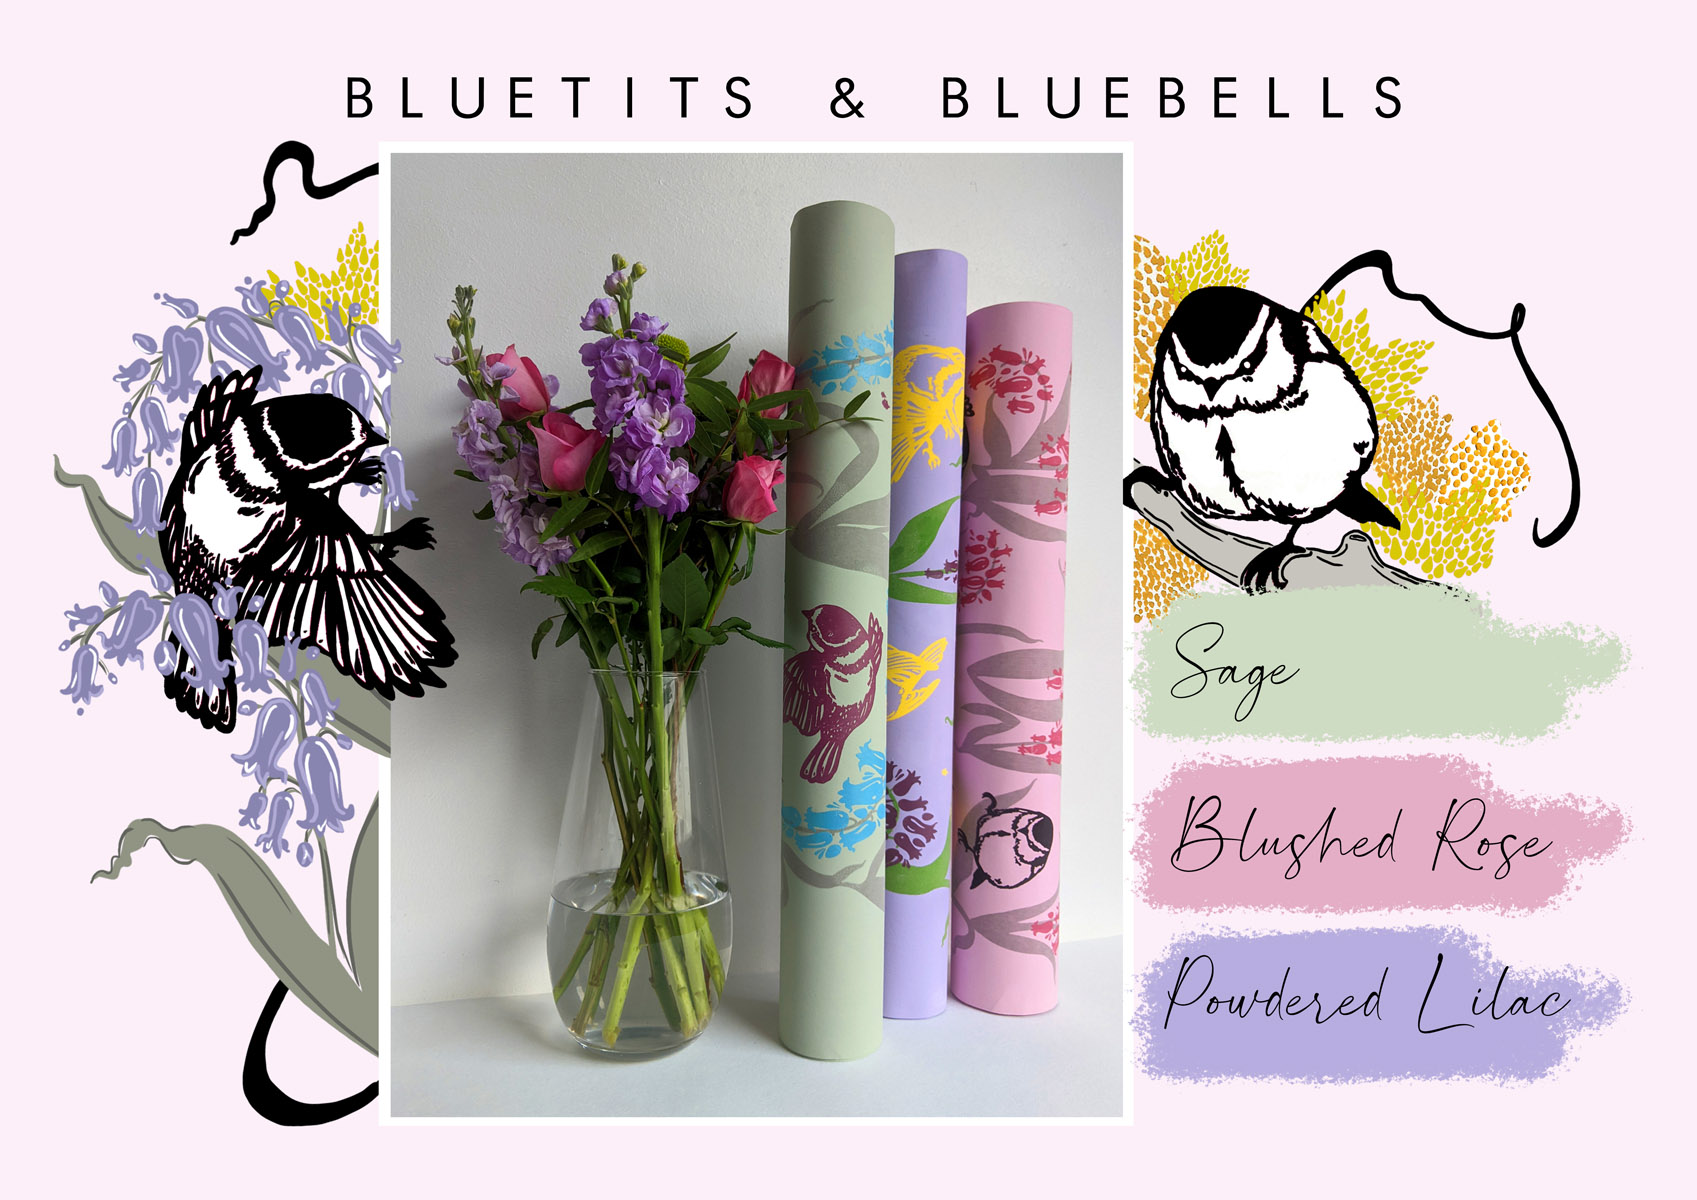 15. Alice Louise Fribbence - Bluetits & Bluebells